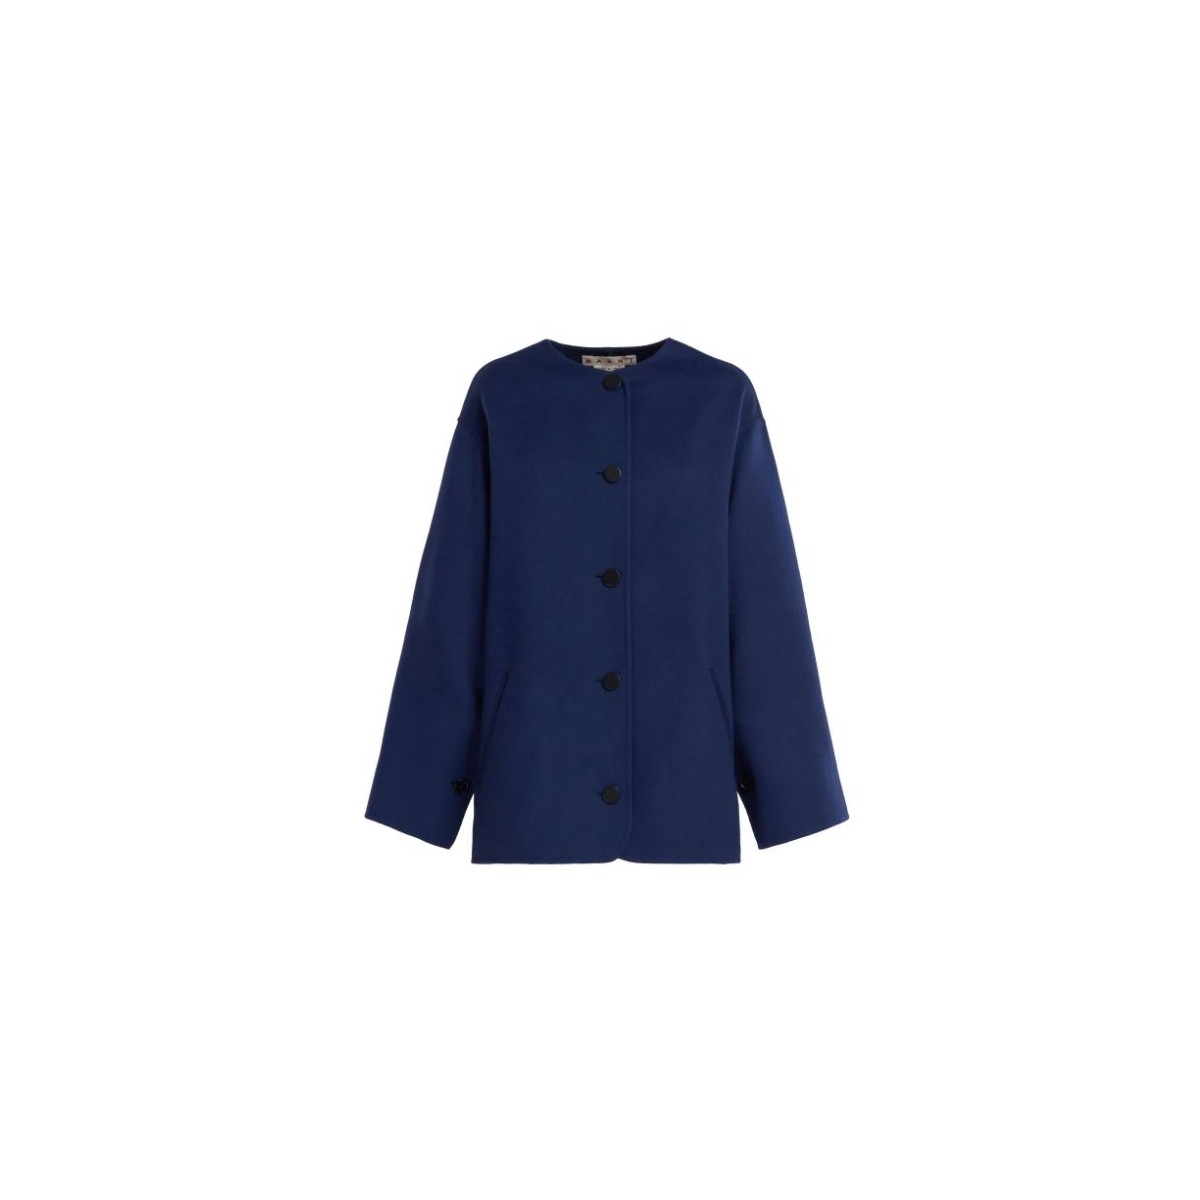 Marni Navy Blue Virgin Wool Blend Button Up Coat. 